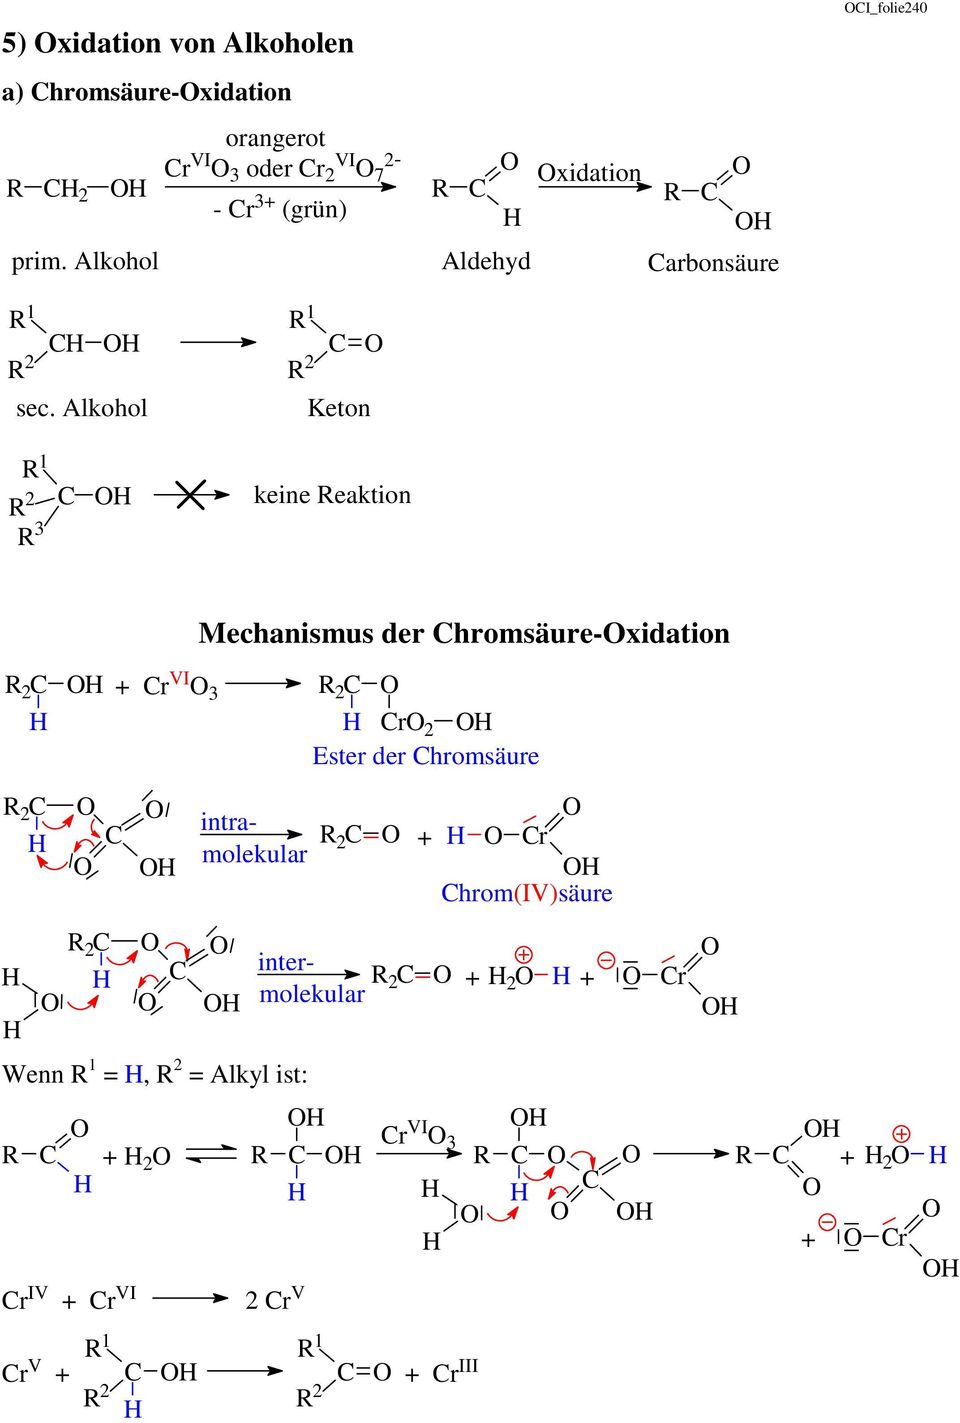 Alkohol 1 2 Keton 2 1 3 keine eaktion Mechanismus der hromsäure-xidation 2 r VI 3 2 r 2 Ester der